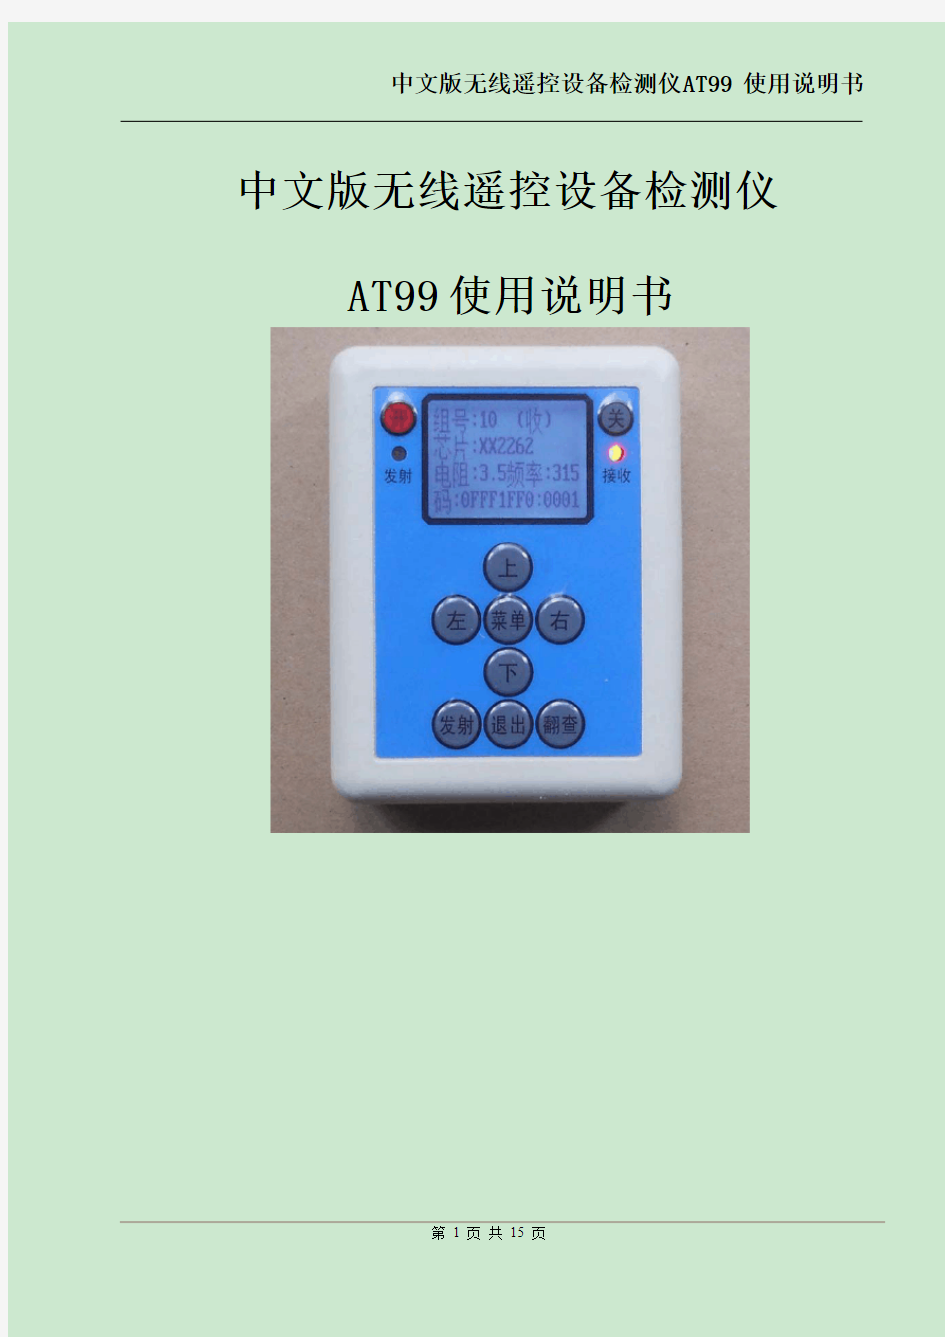 中文版无线遥控分析仪使用说明书